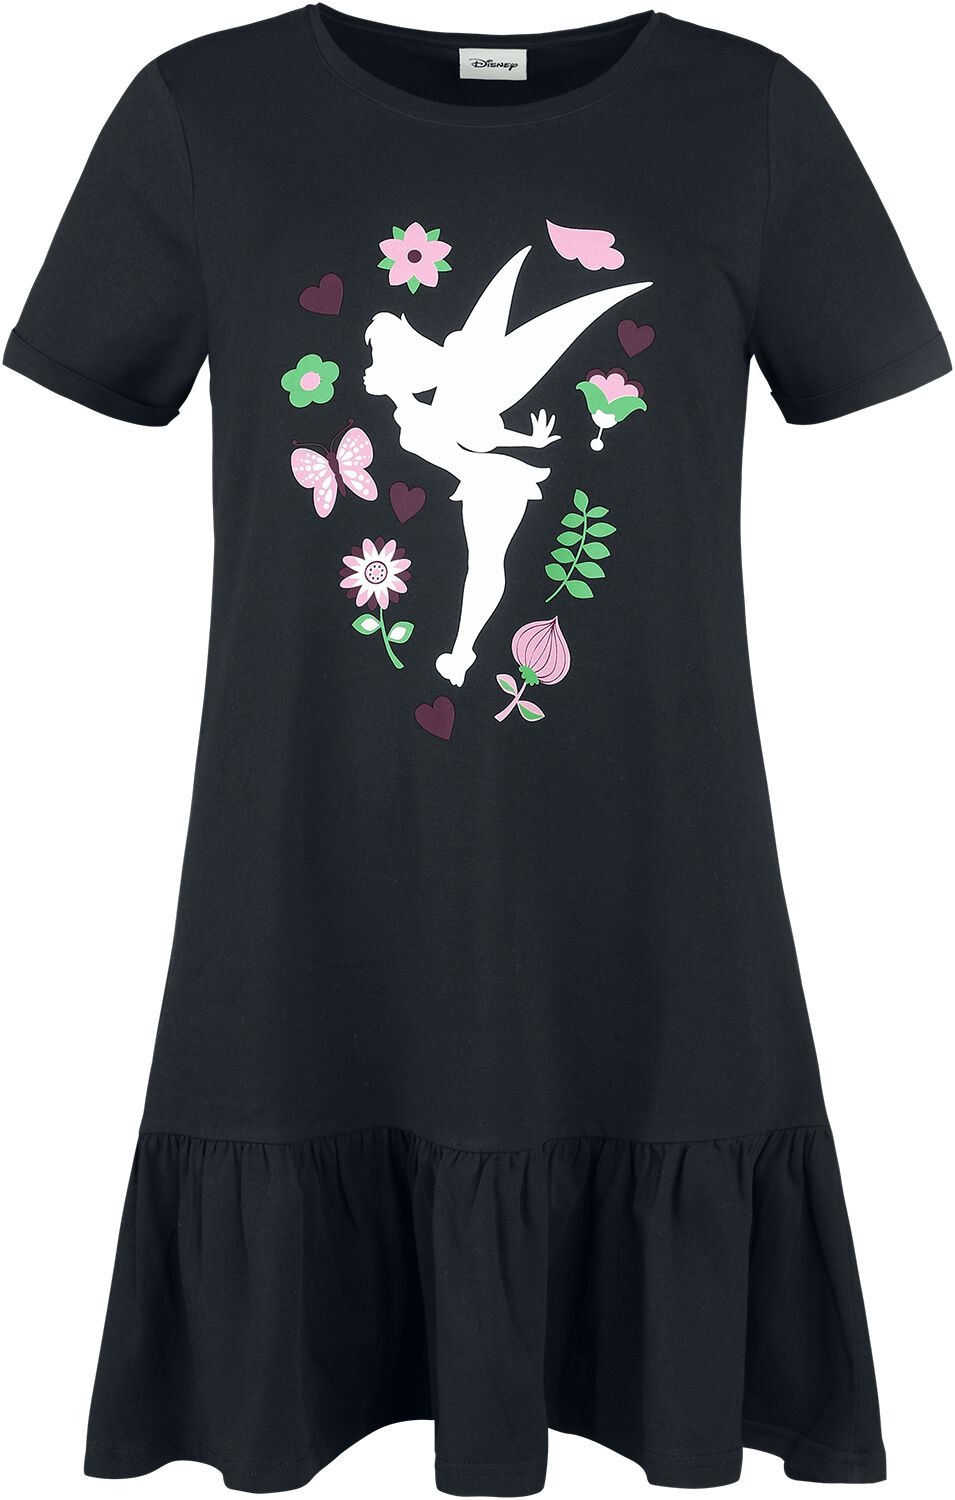 Peter Pan - Disney Kleid lang - Tinker Bell - Flower - S bis L - für Damen - Größe L - schwarz  - EMP exklusives Merchandise!